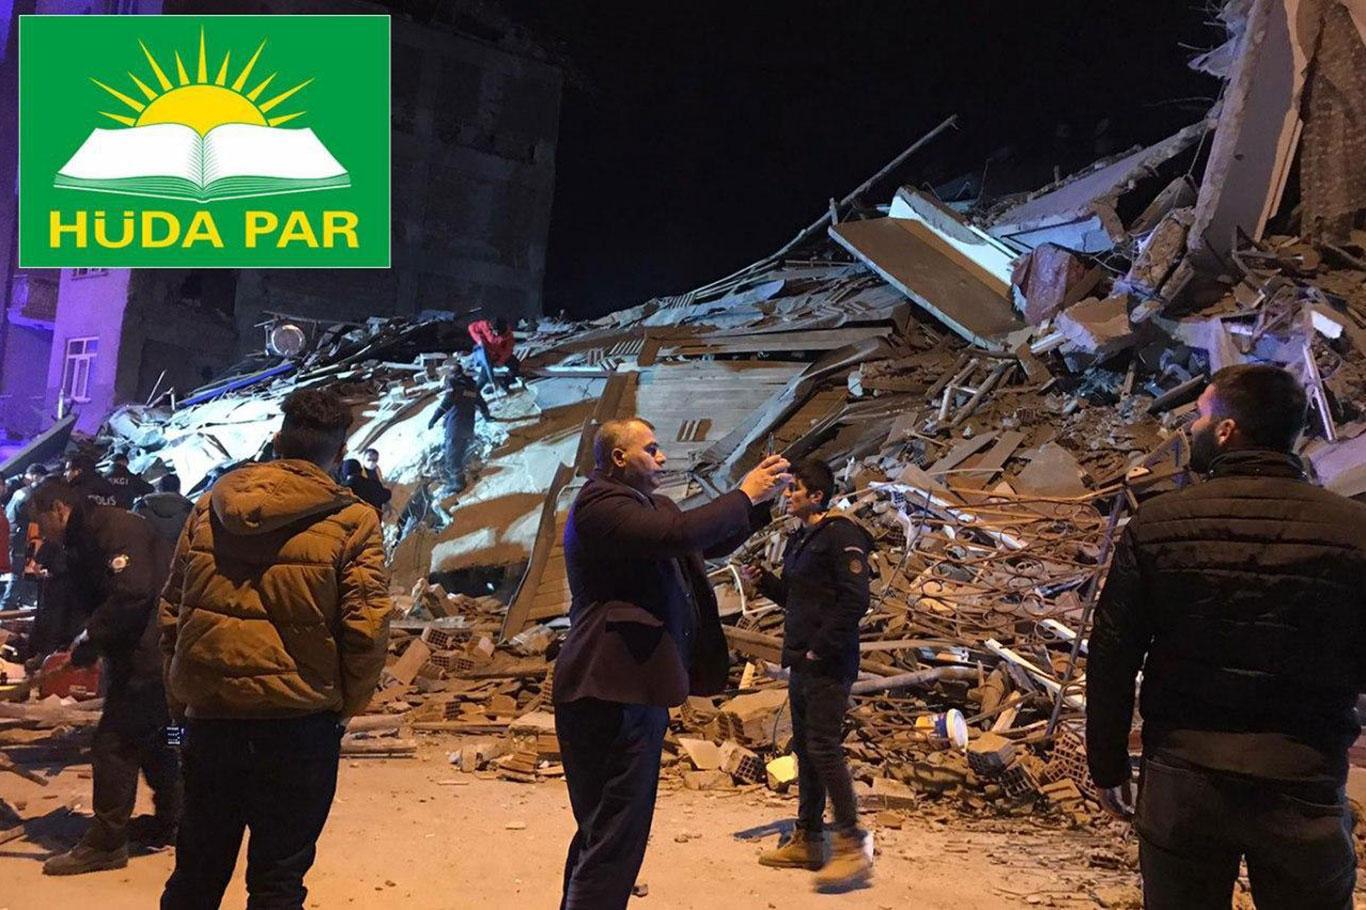 حزب الهدى يدعو للمساعدة لضحايا الزلزال بشرق تركيا